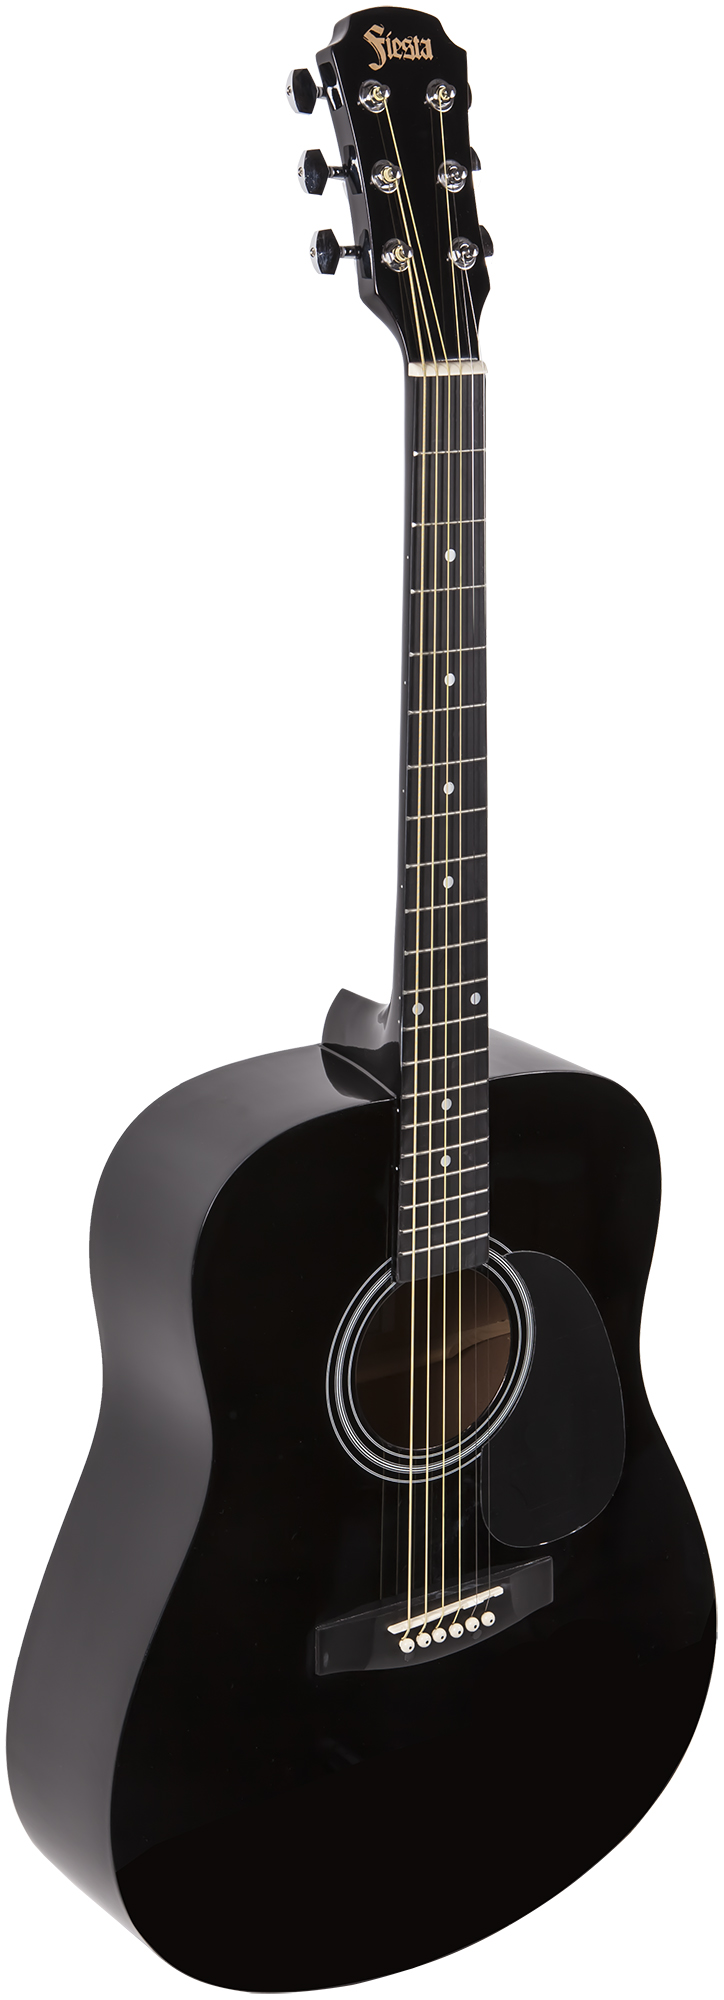 Акустические гитары Aria FIESTA FST-300 BK процессоры эффектов и педали для гитары mooer baby water